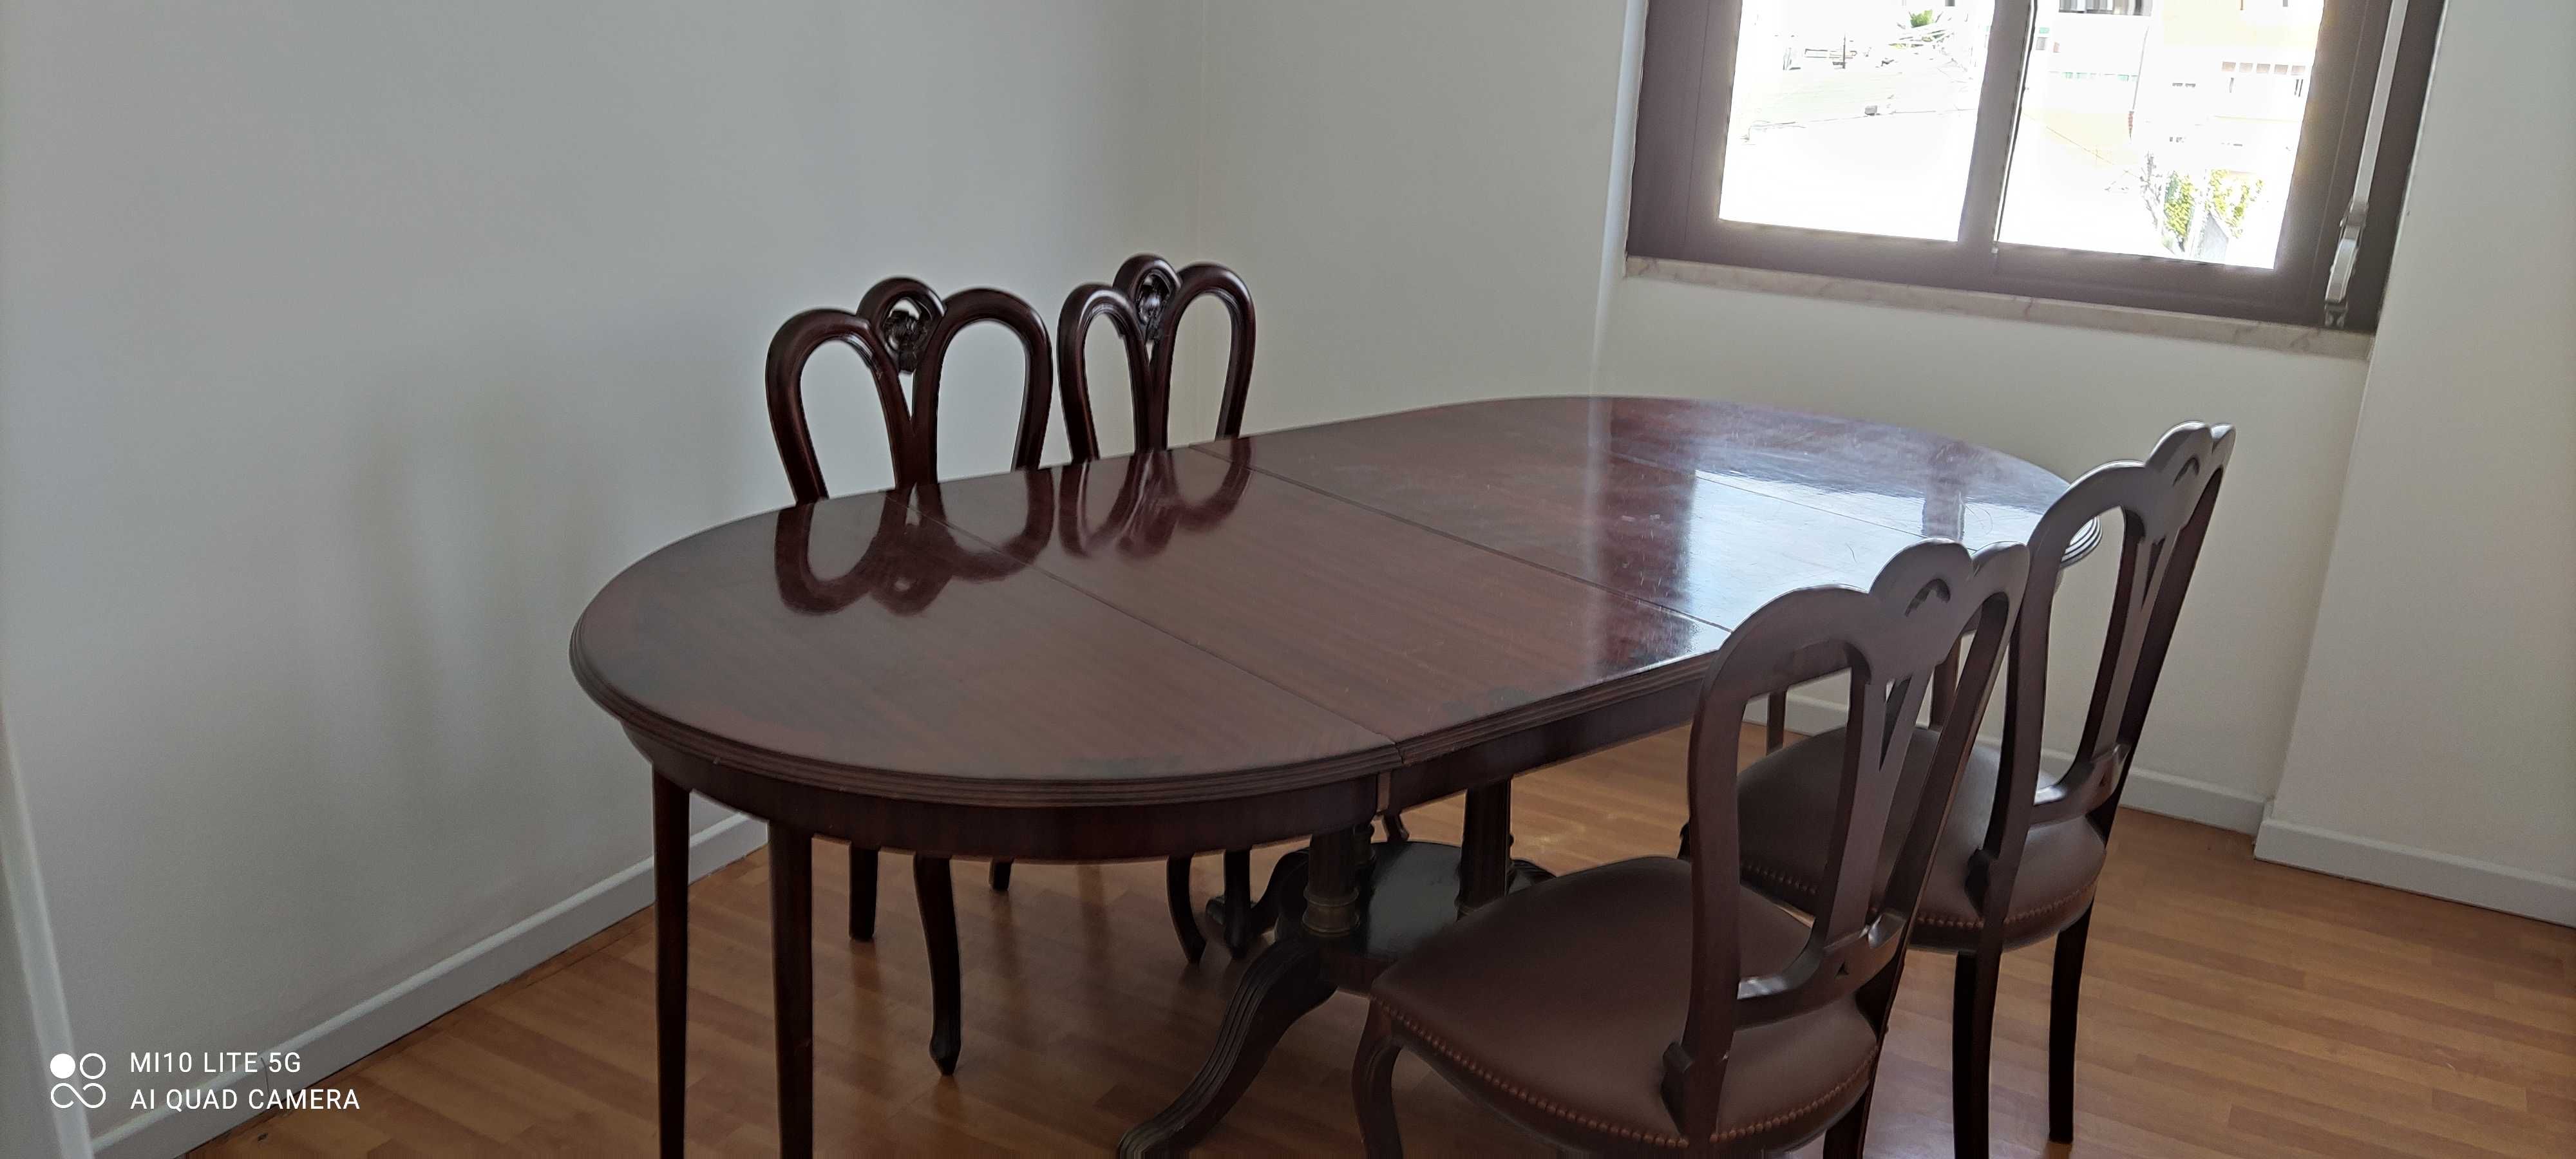 Mesa Jantar/Reunião - Madeira maciça + 4 Cadeiras Estofadas